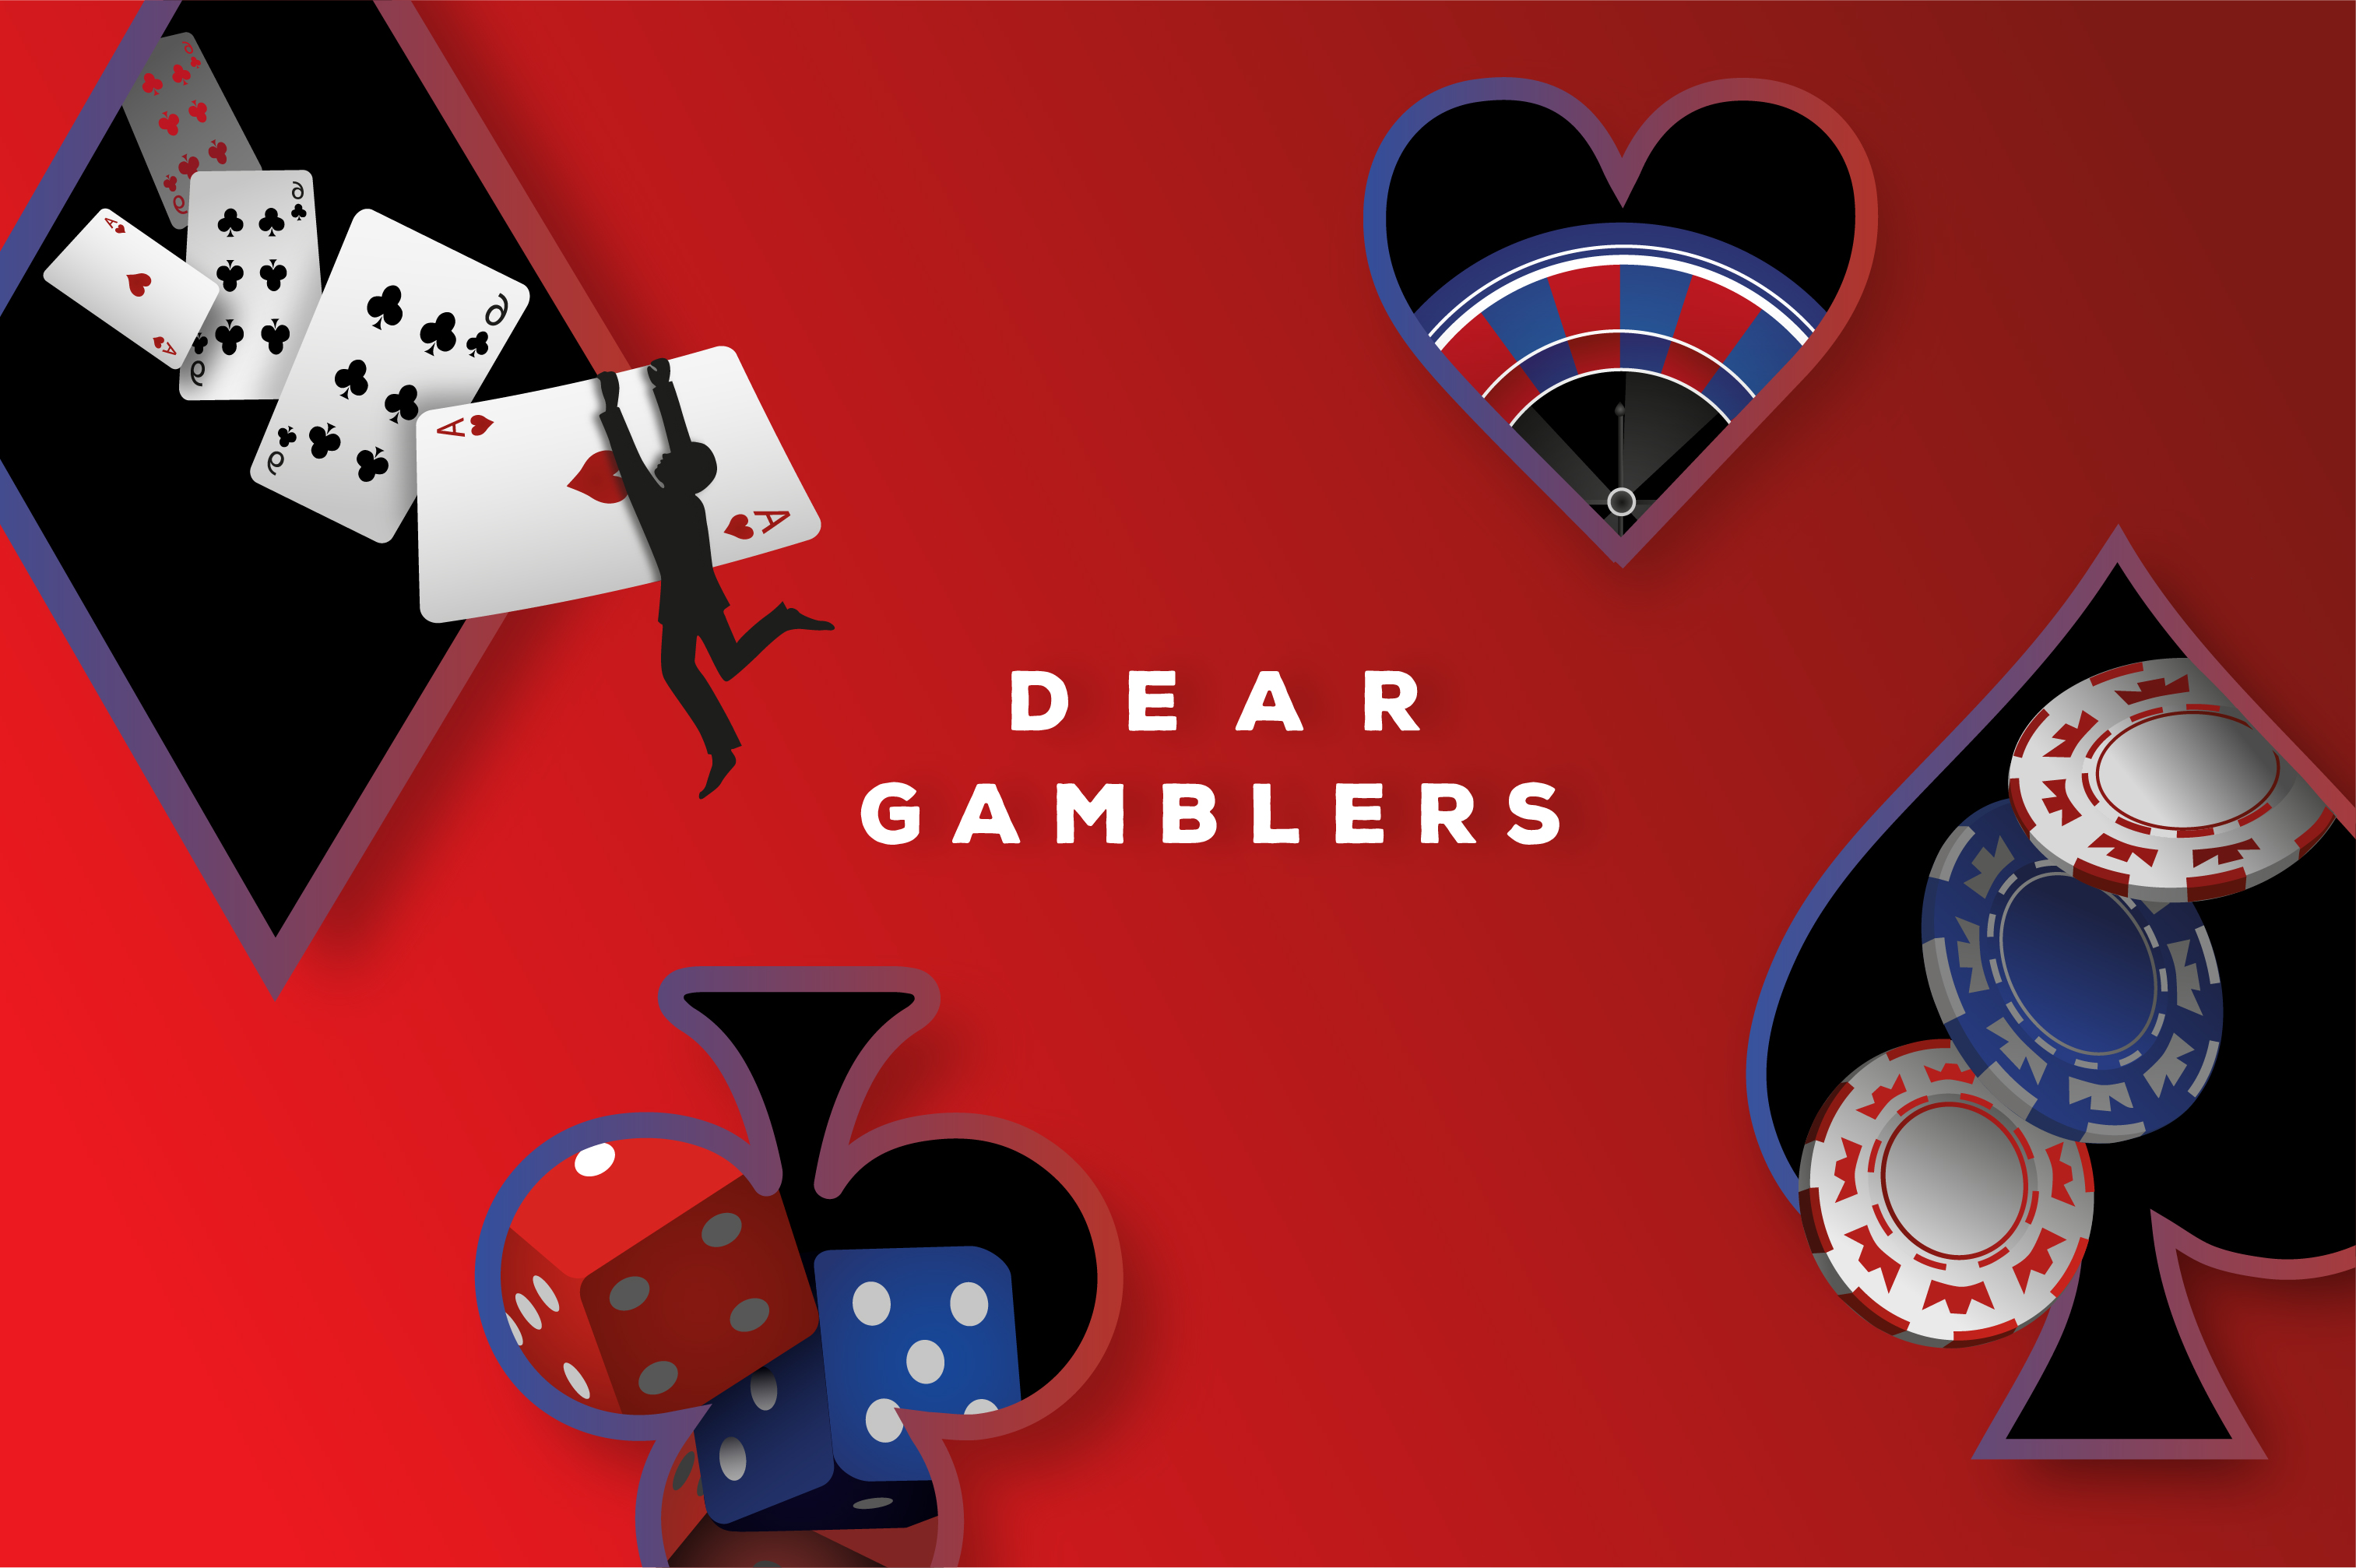 Dear Gamblers